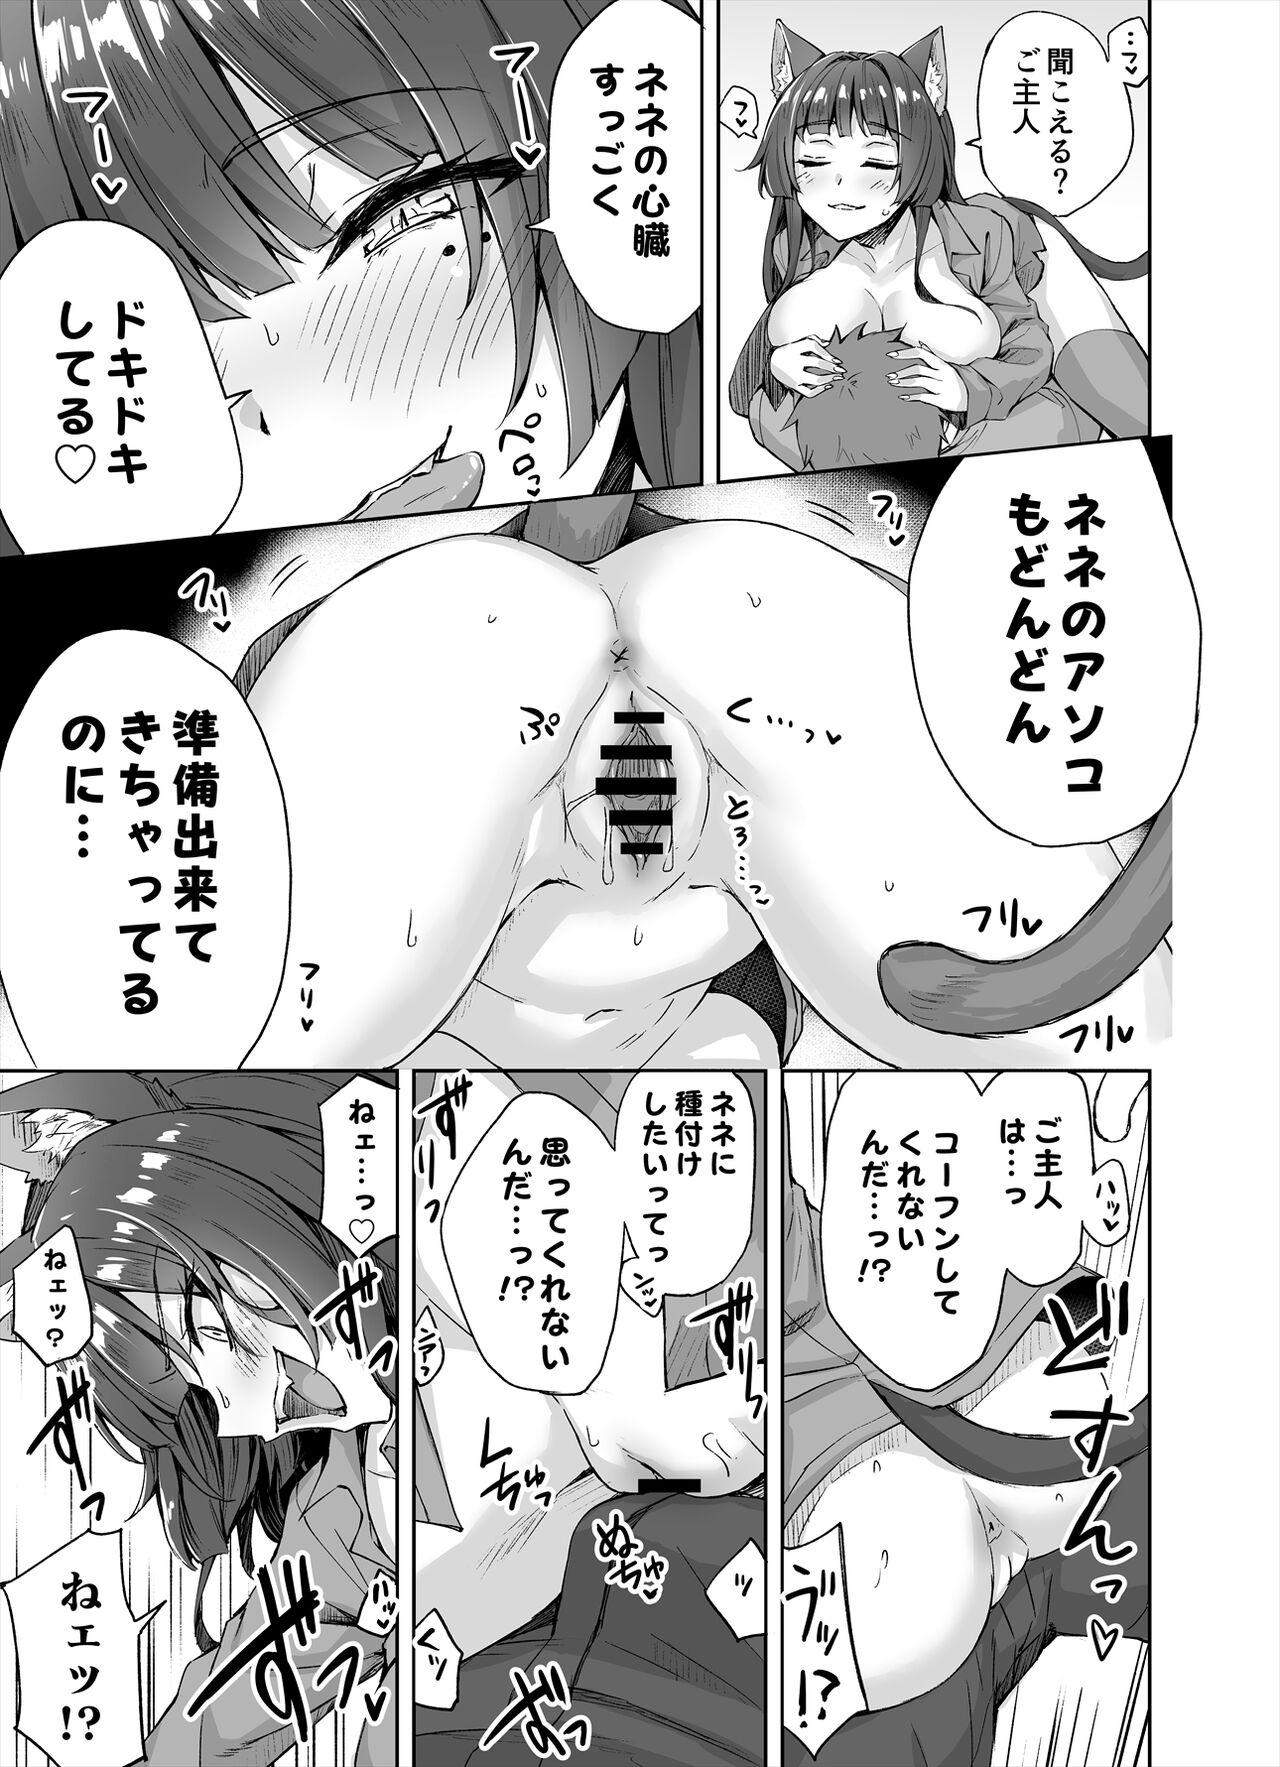 Putinha [Kotatsu] Yandere-kai Neko-chan Seijin Manga #01 Concha - Page 4